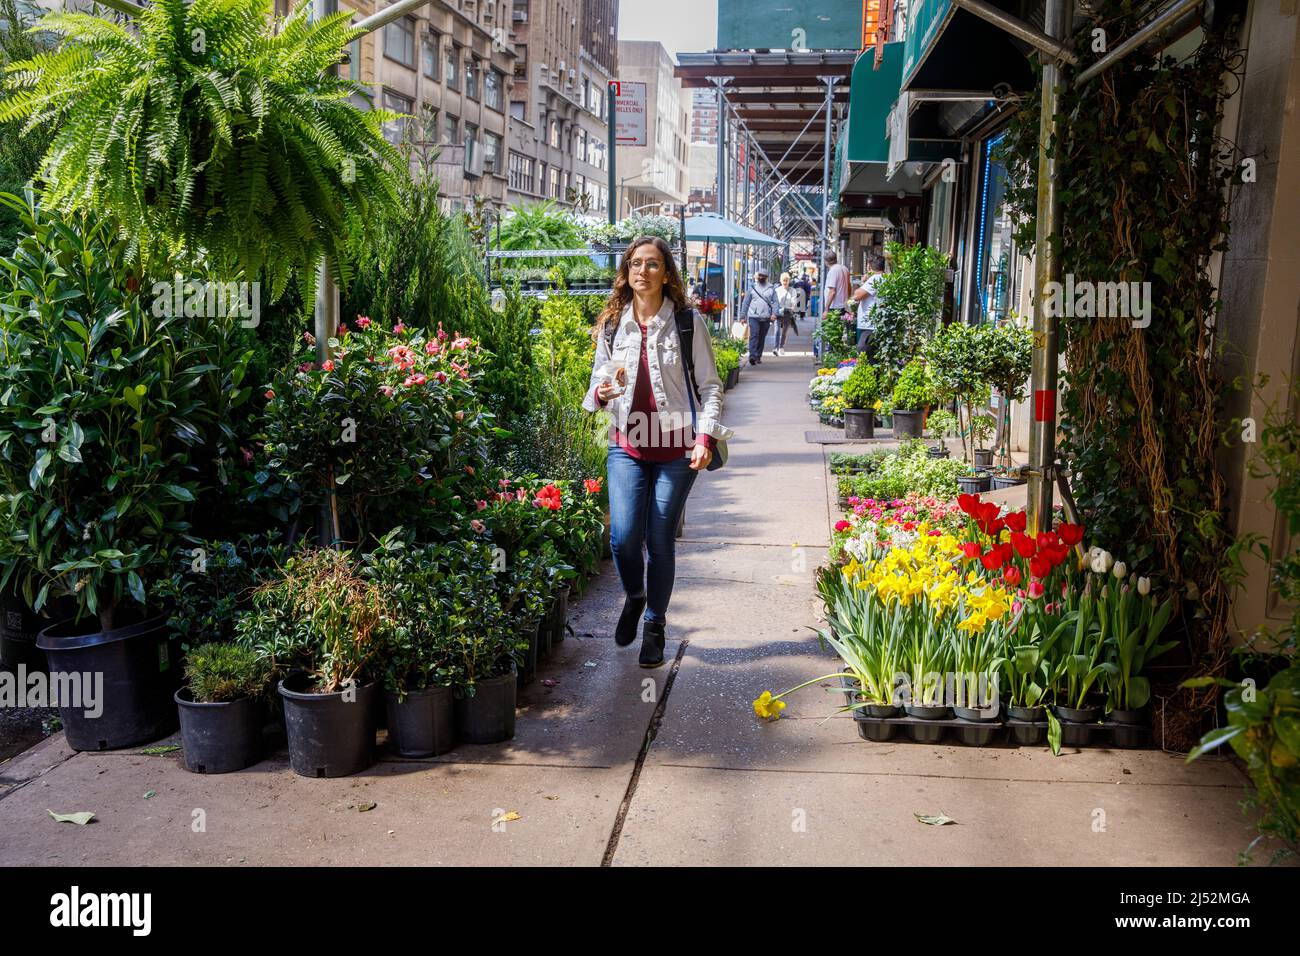 Trottoir pittoresque dans le quartier des fleurs, 28th Street, Manhattan, New York, NY, ÉTATS-UNIS. Banque D'Images